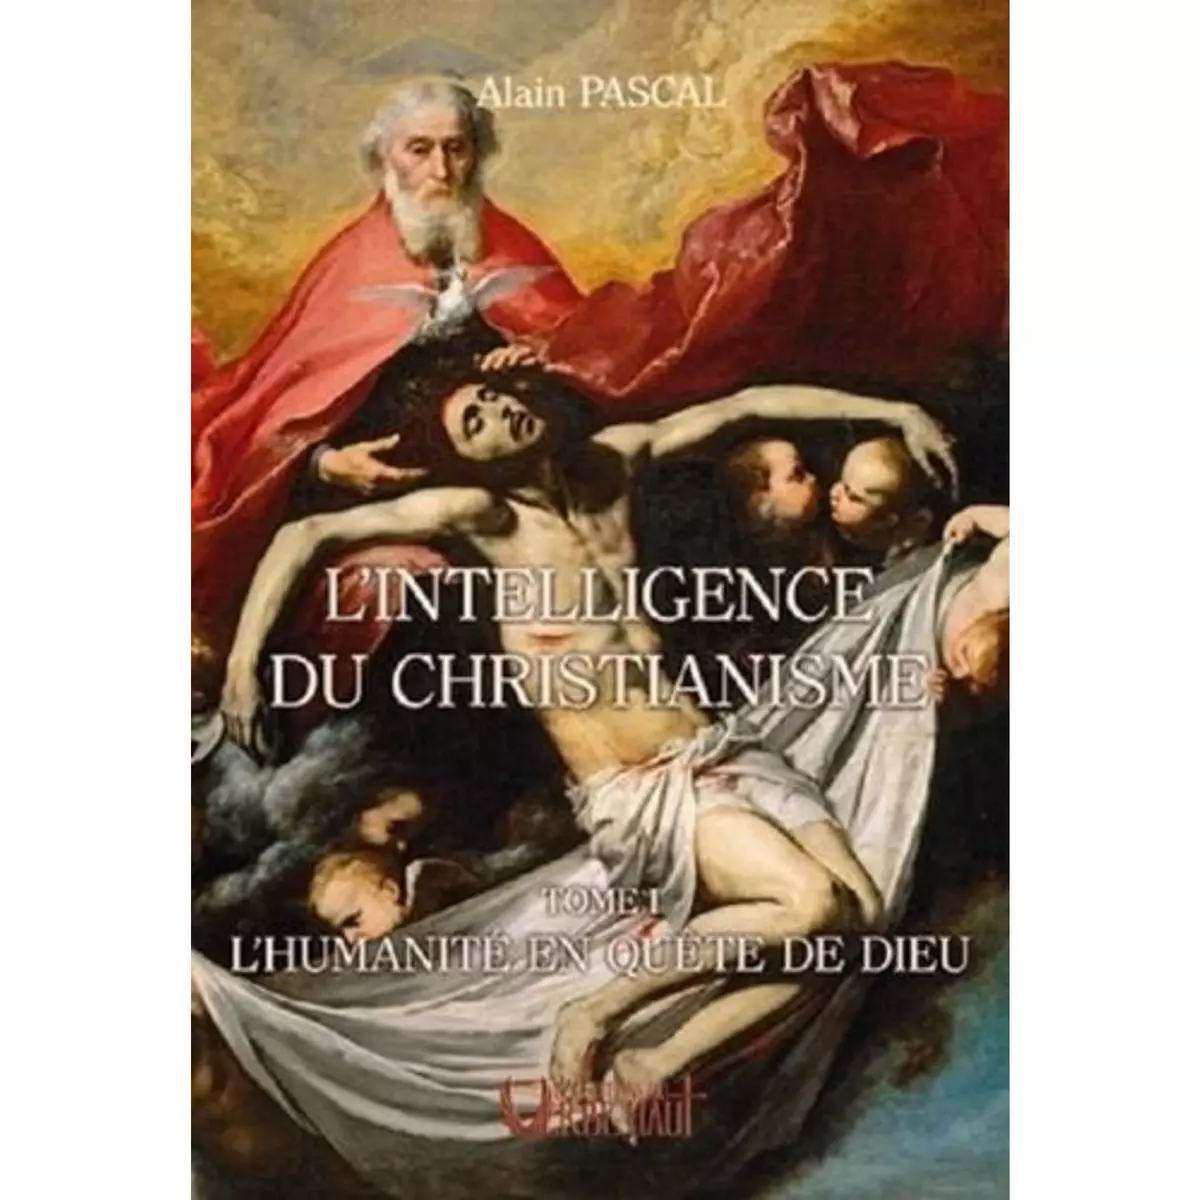  L'INTELLIGENCE DU CHRISTIANISME. TOME 1, L'HUMANITE EN QUETE DE DIEU, Pascal Alain